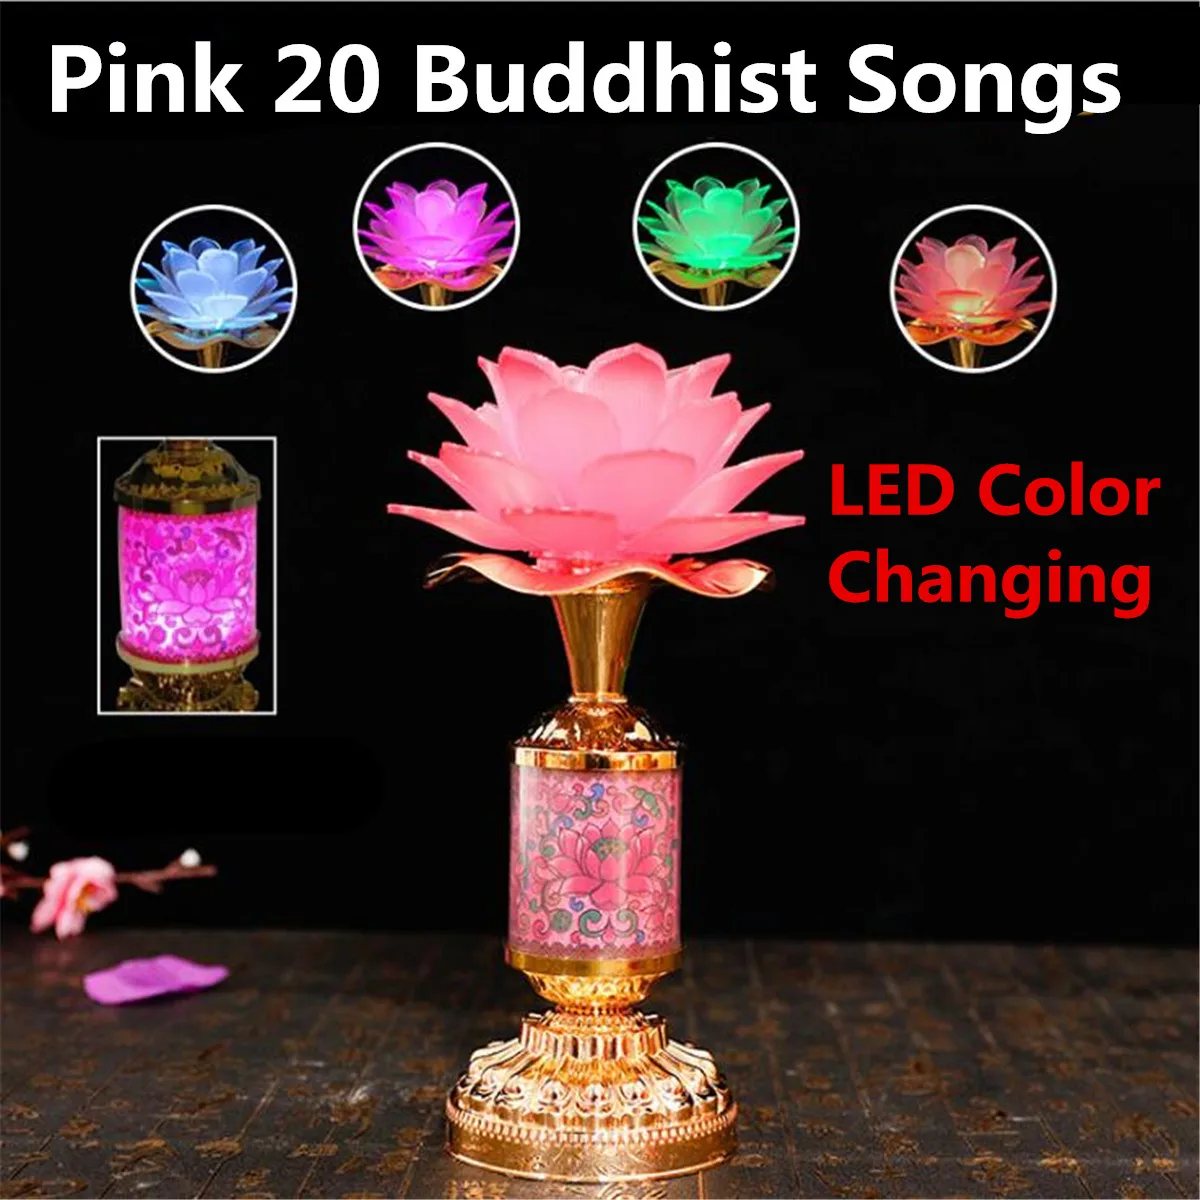 7 цветов цветок буддийский молитвенный светильник Будда музыкальная машина светодиодный меняющий цвет Будда светильник храма 51 20 буддийские песни